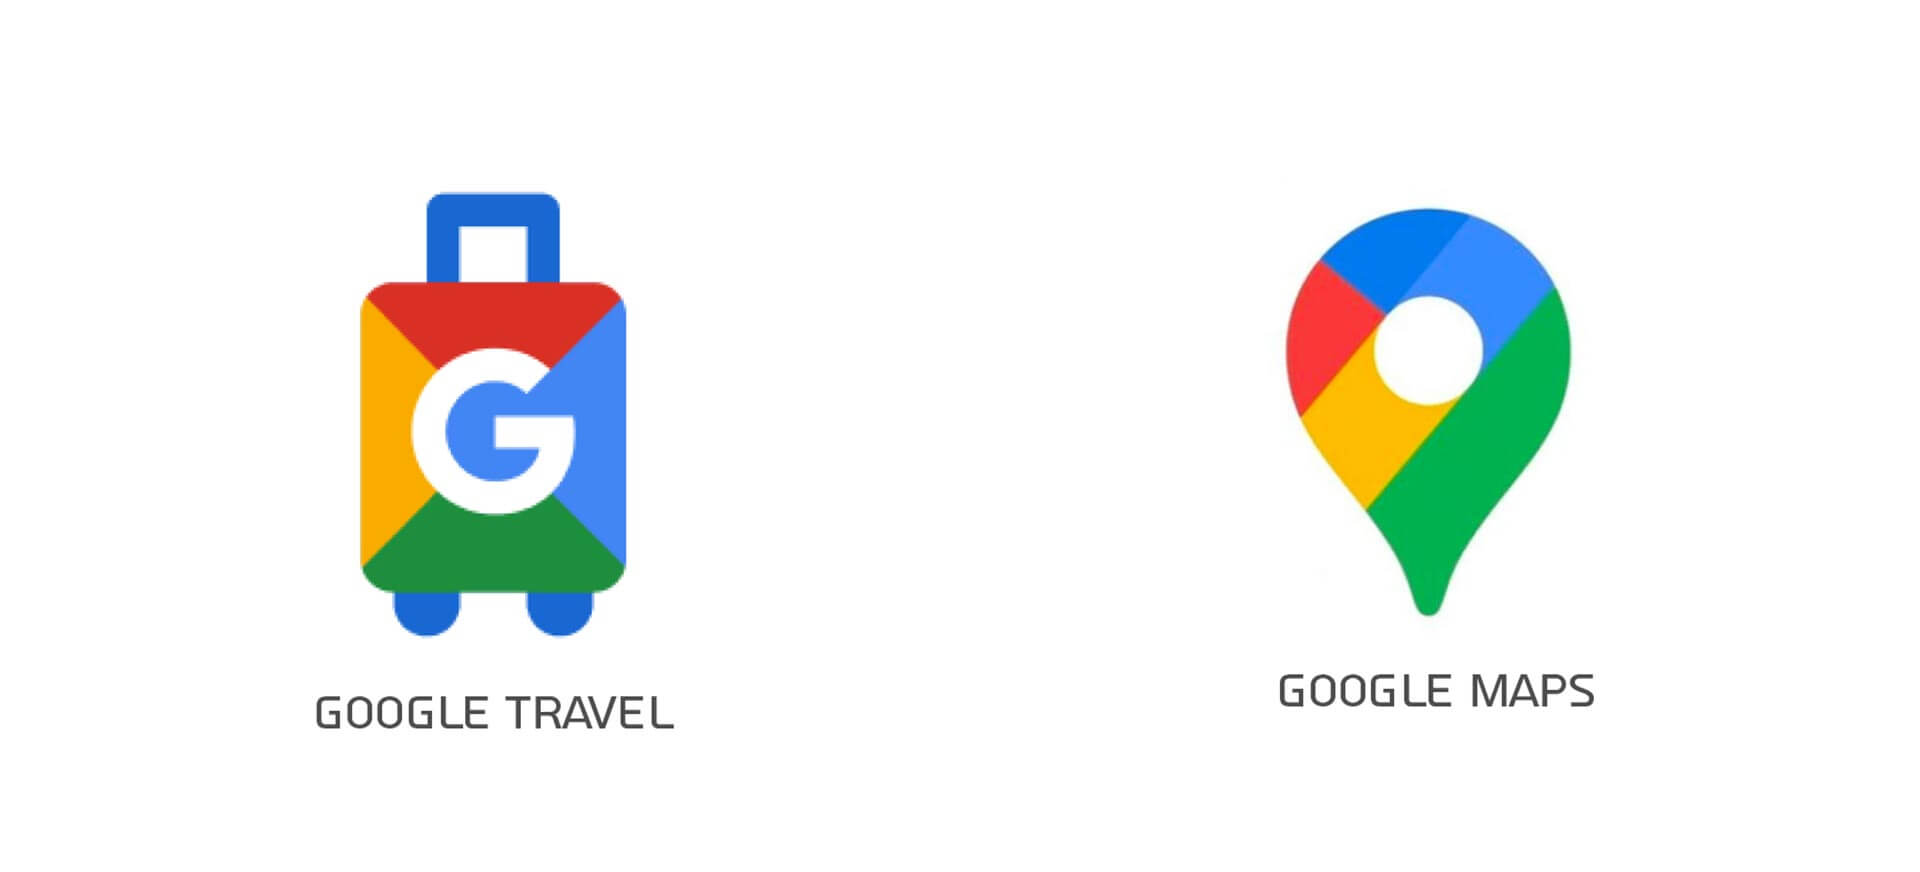 מנועי החיפוש של גוגל- GOOGLE MAPS ו-GOOGLE TRAVEL